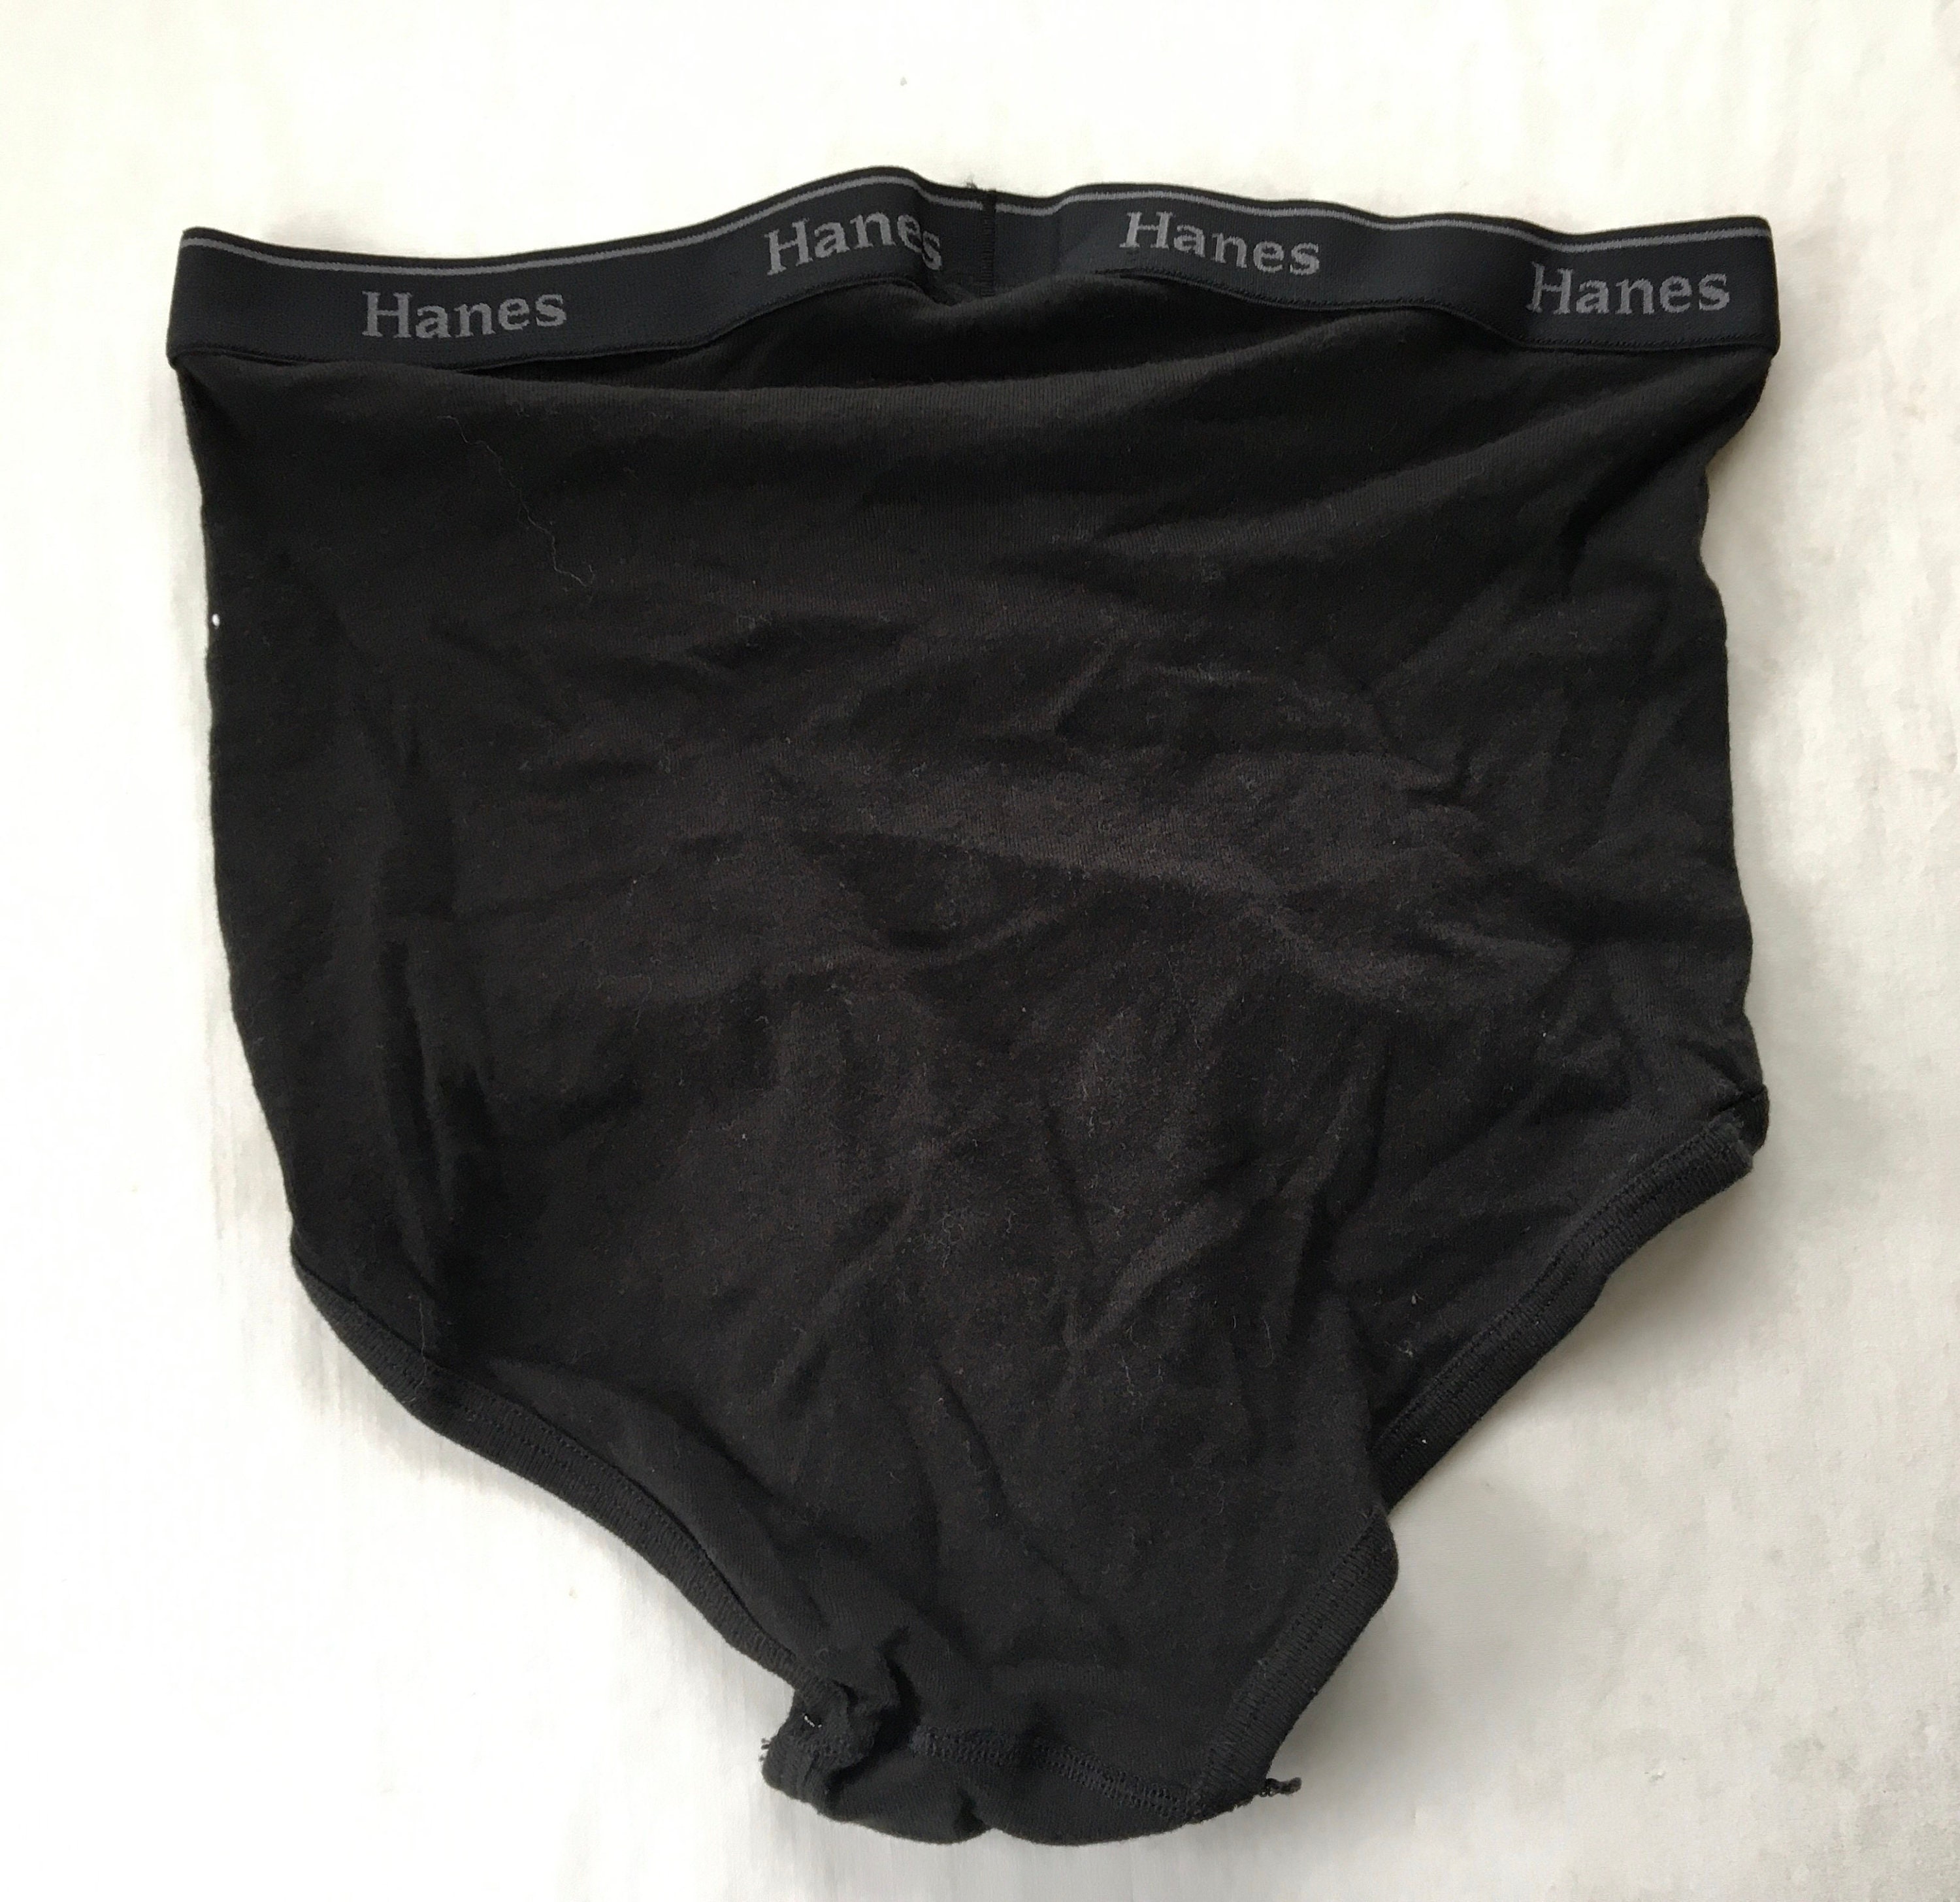 Vintage Hanes Briefs Cotton Underwear Black Gray Colored Mens Size